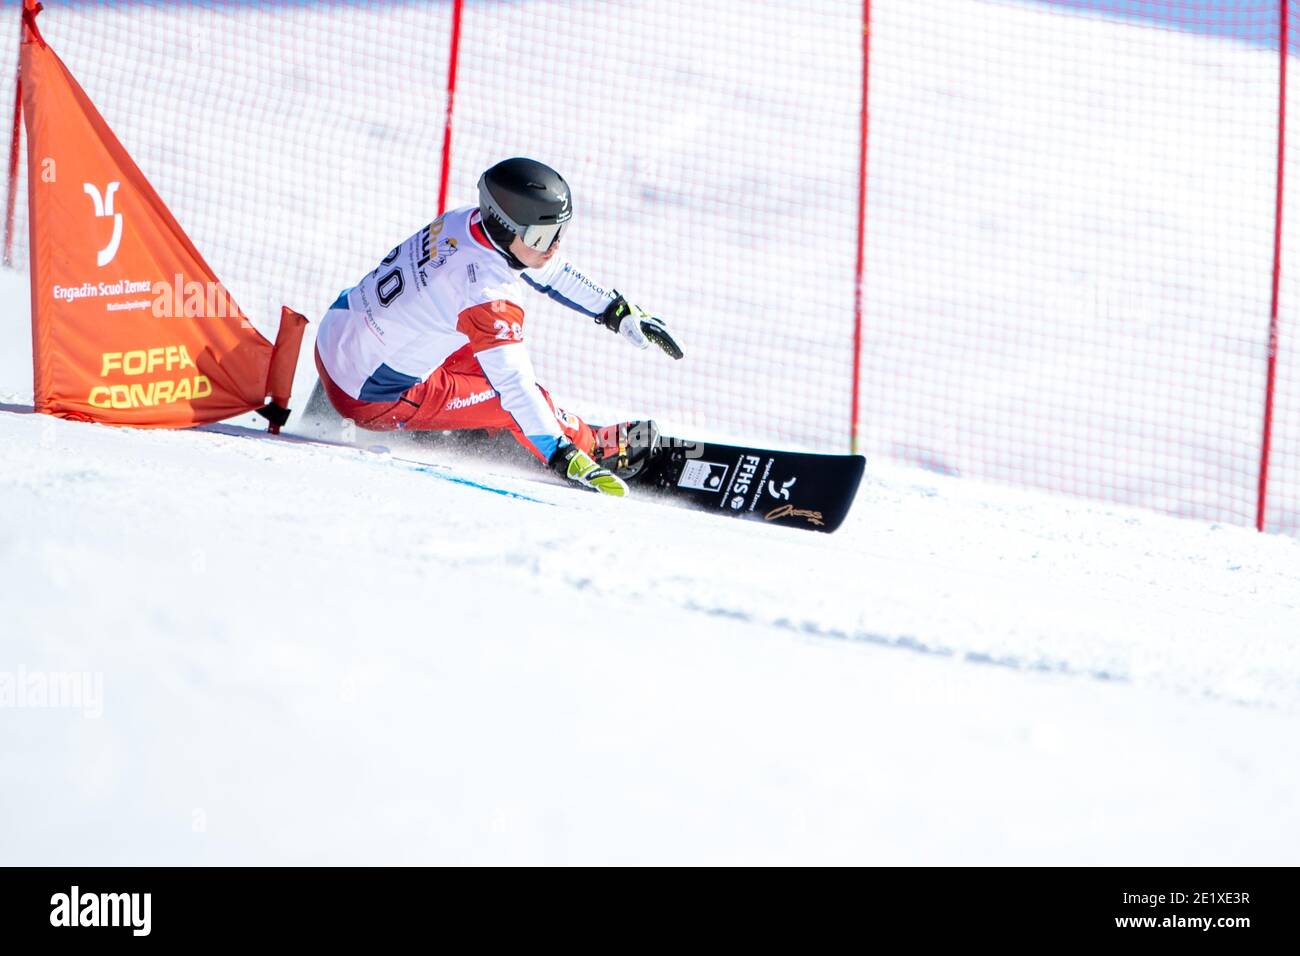 09.01.2021, Scuol, Alpin Worldcup, FIS Snowboard Alpin Worldcup Scuol, GALMARINI Nevin (SUI) Stock Photo